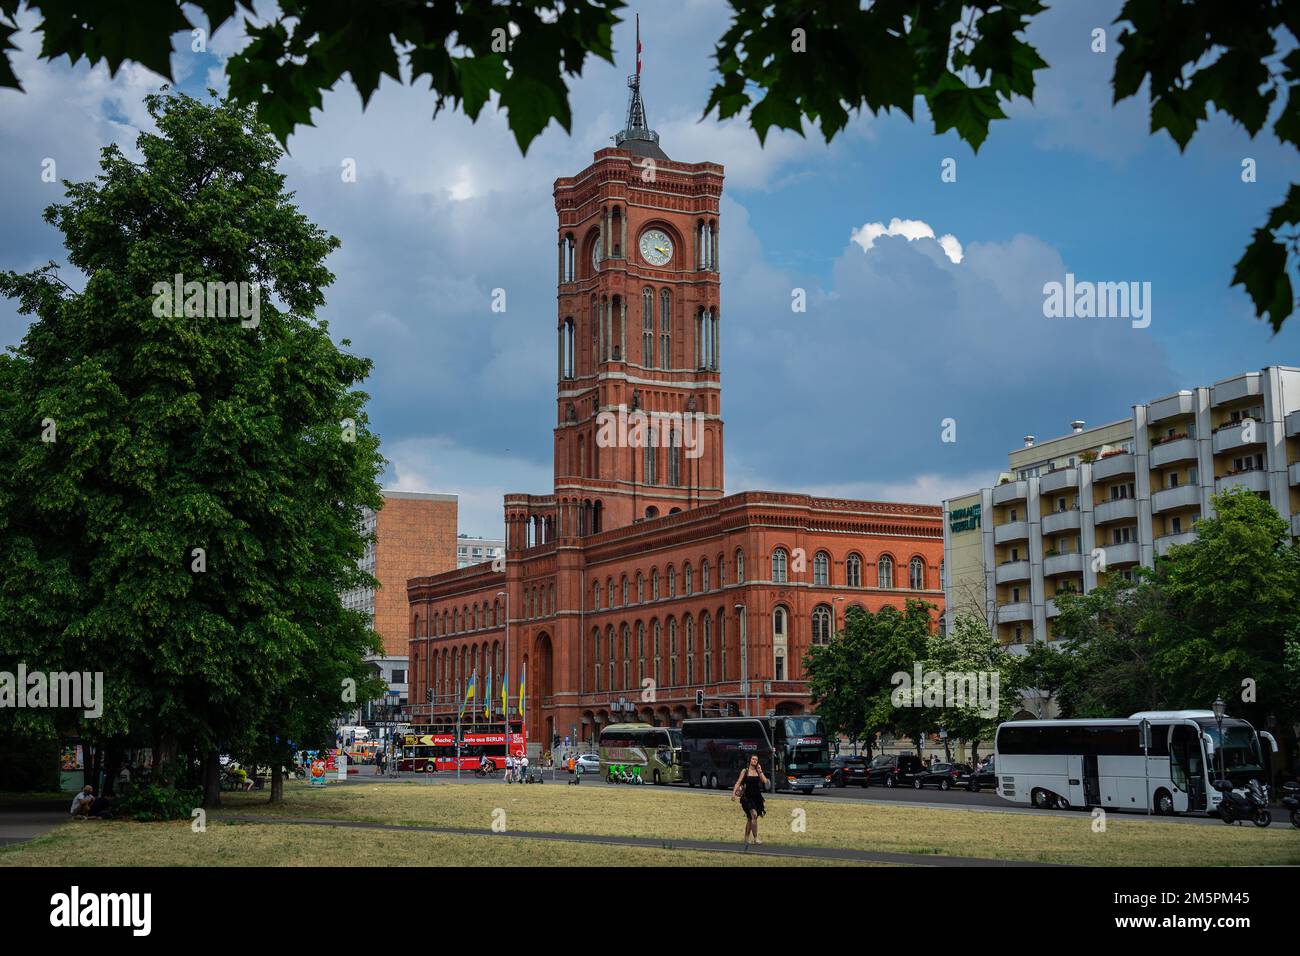 Berlin, Allemagne - 25 juin 2022: Rotes Rathaus, l'hôtel de ville de Berlin tiré du parc Innerstadt avec des bus touristiques en face Banque D'Images